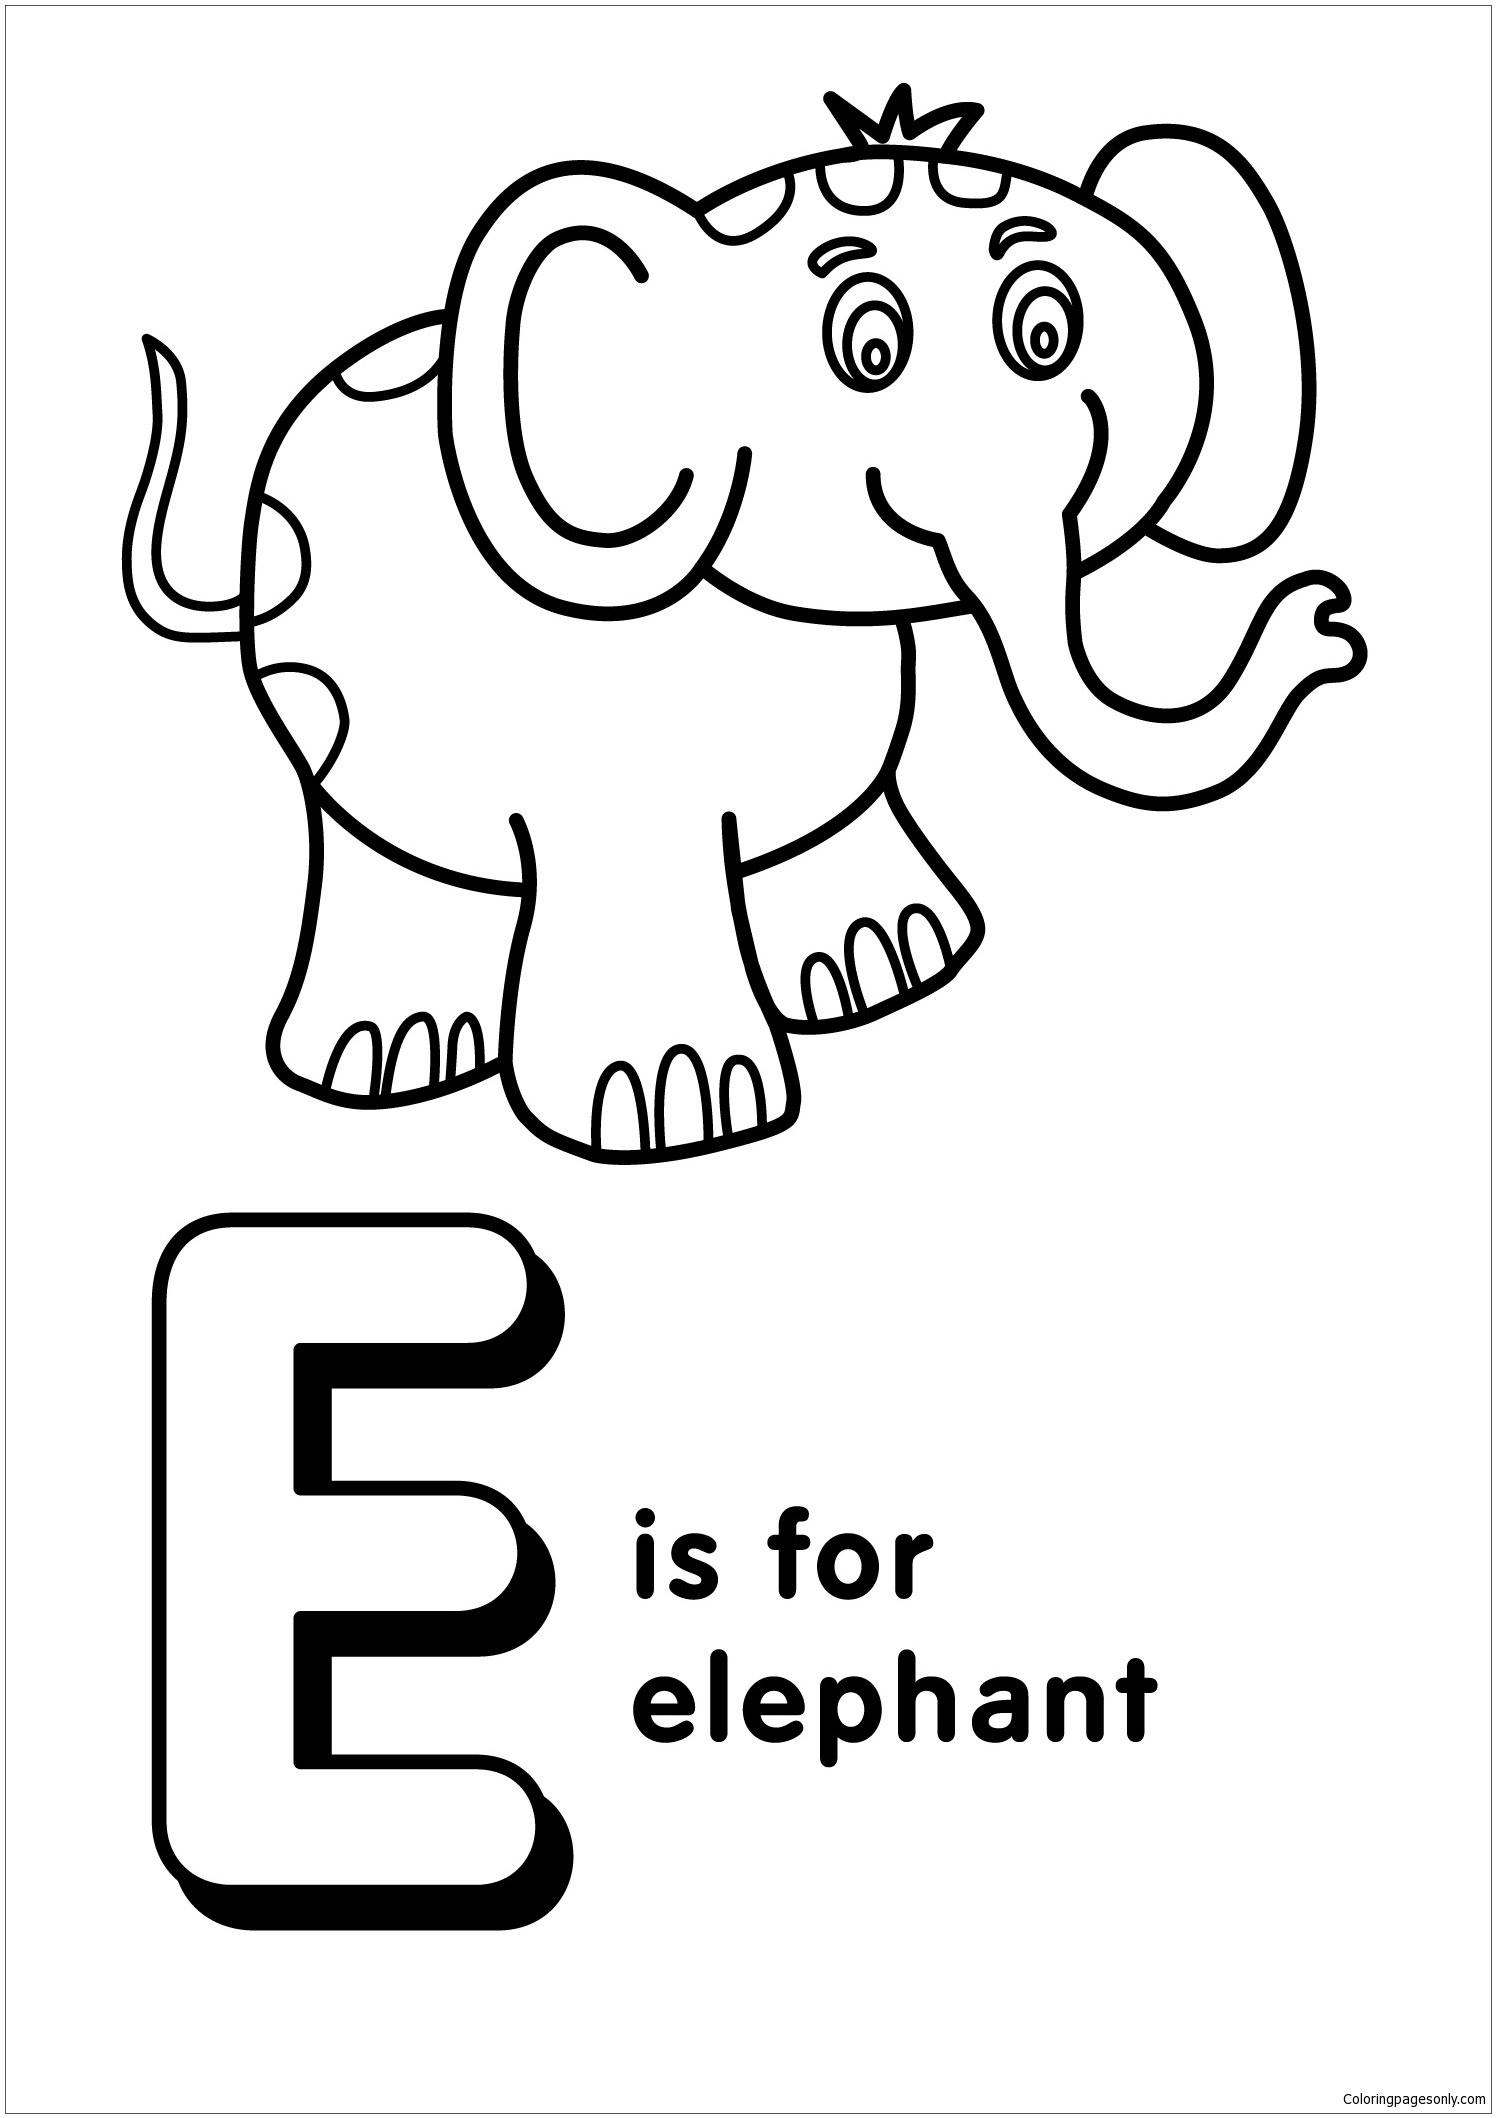 字母 E 代表字母 E 中的大象 2